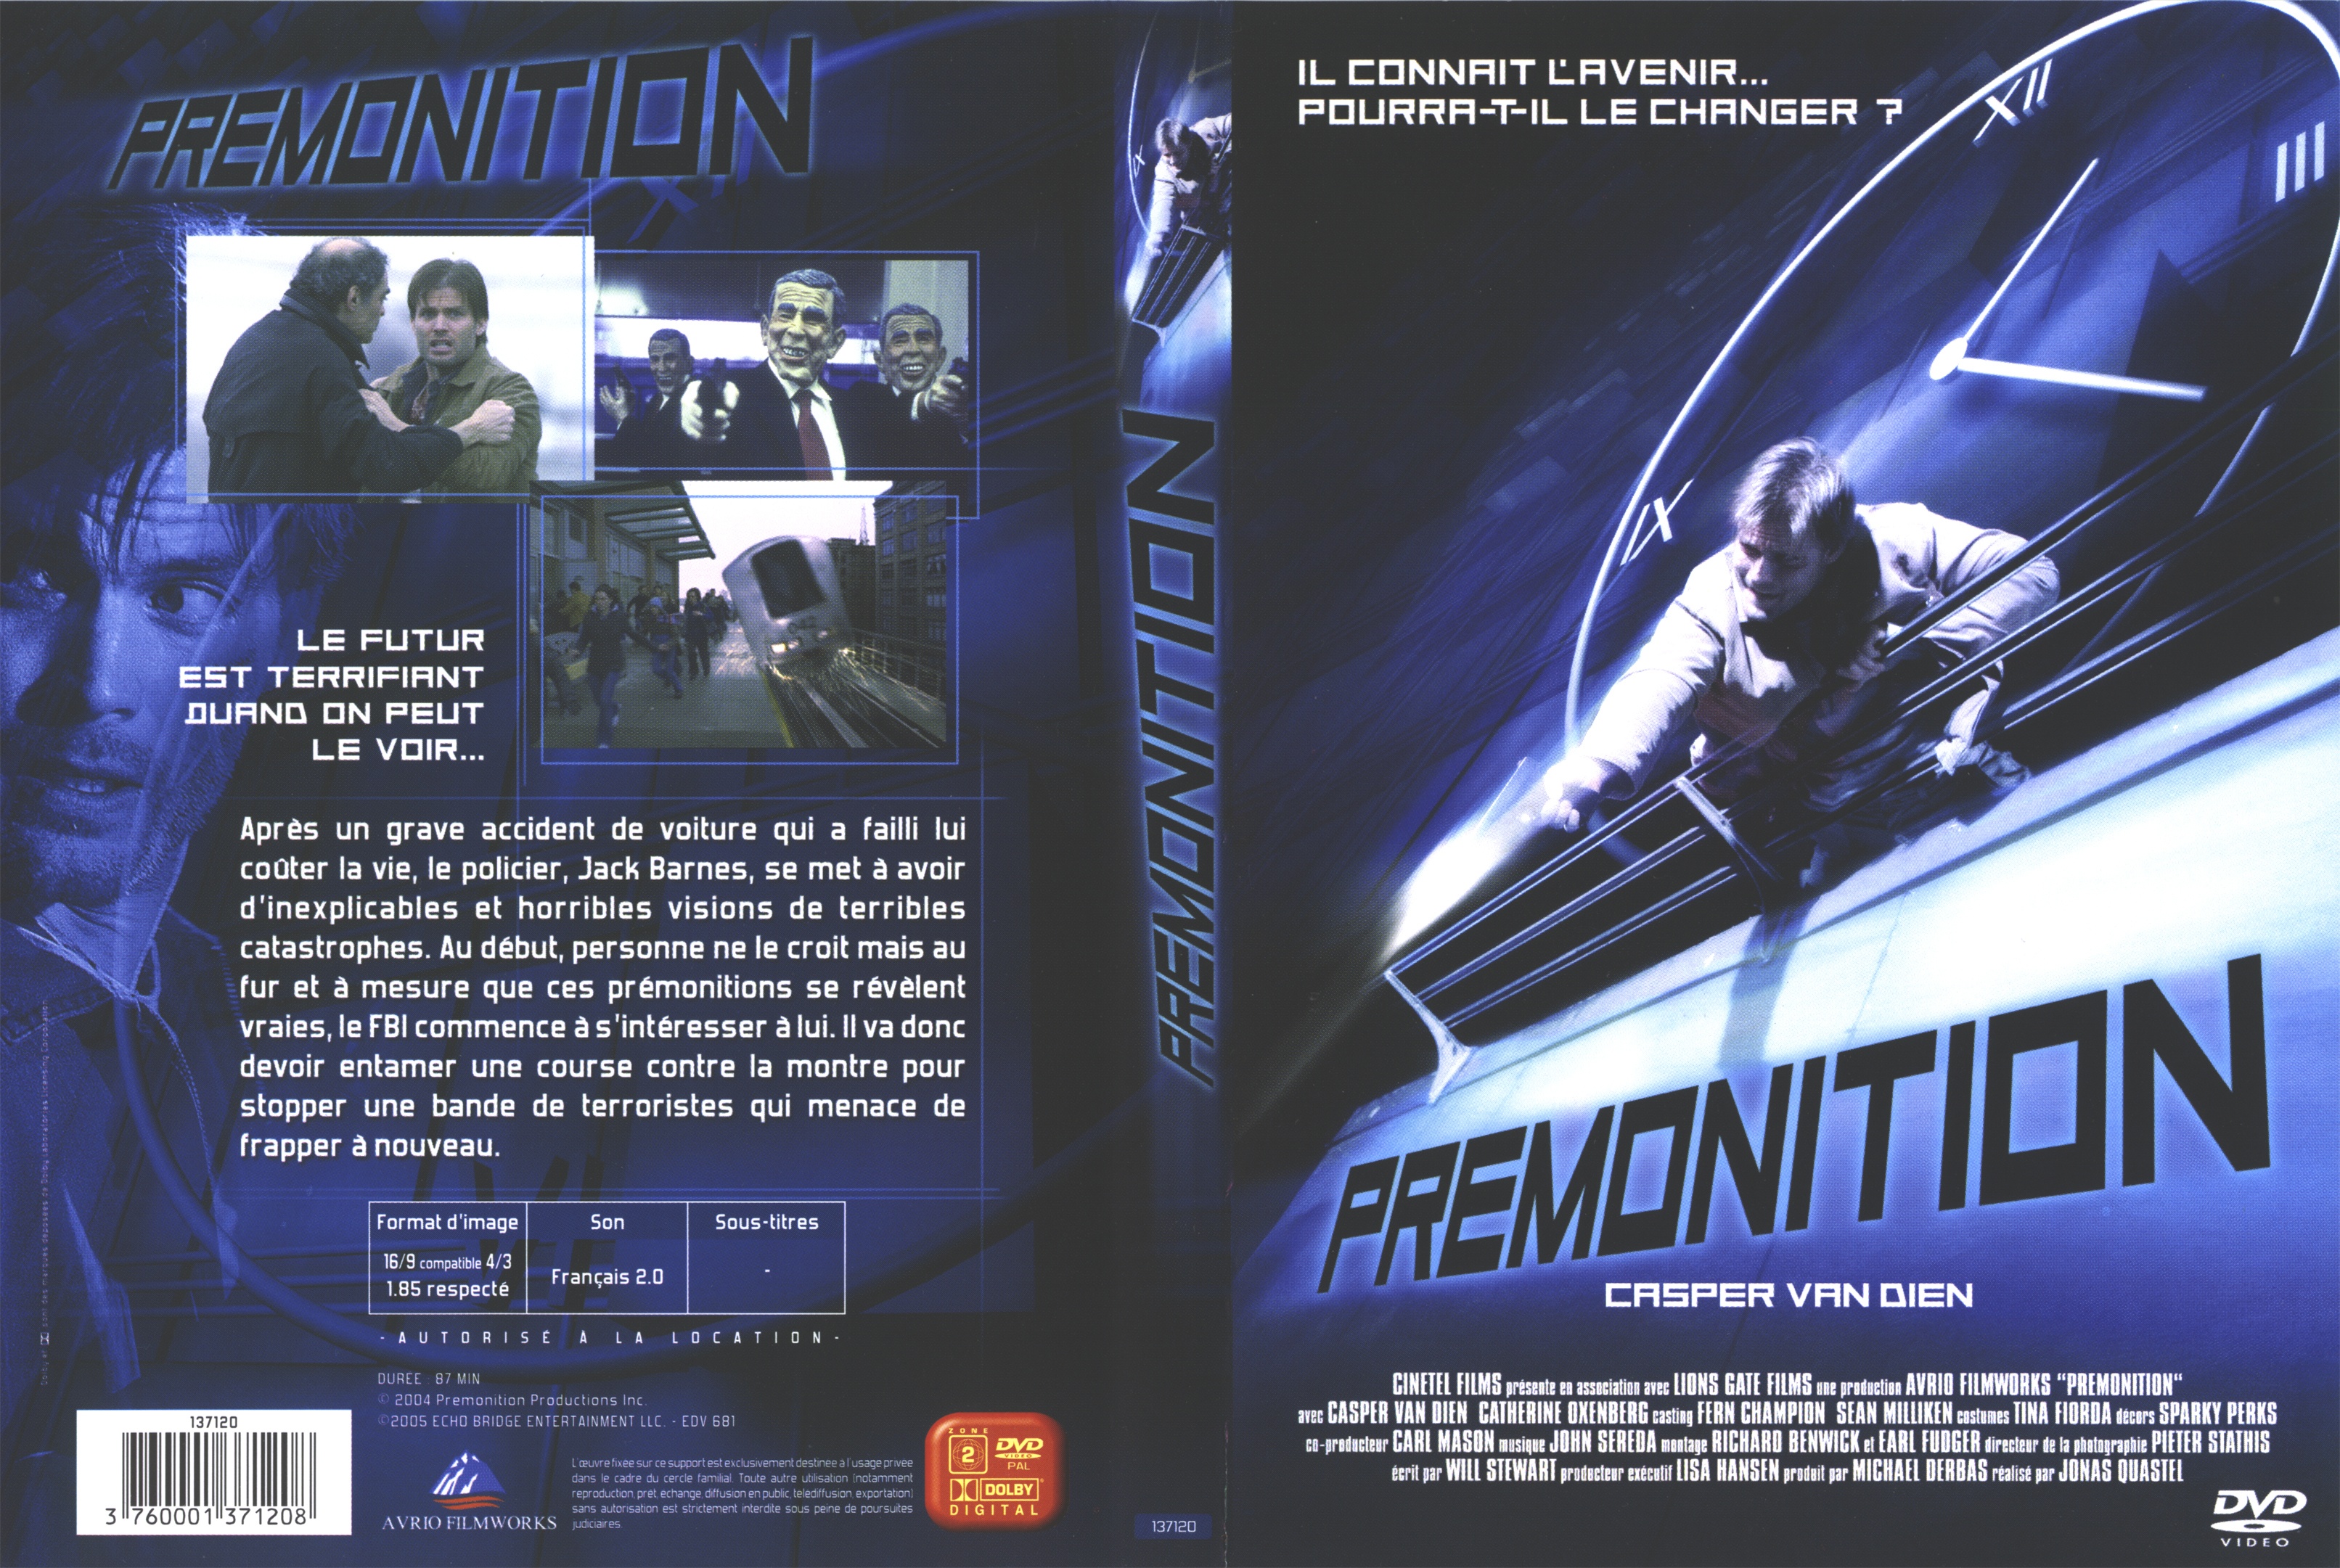 Jaquette DVD Prmonition